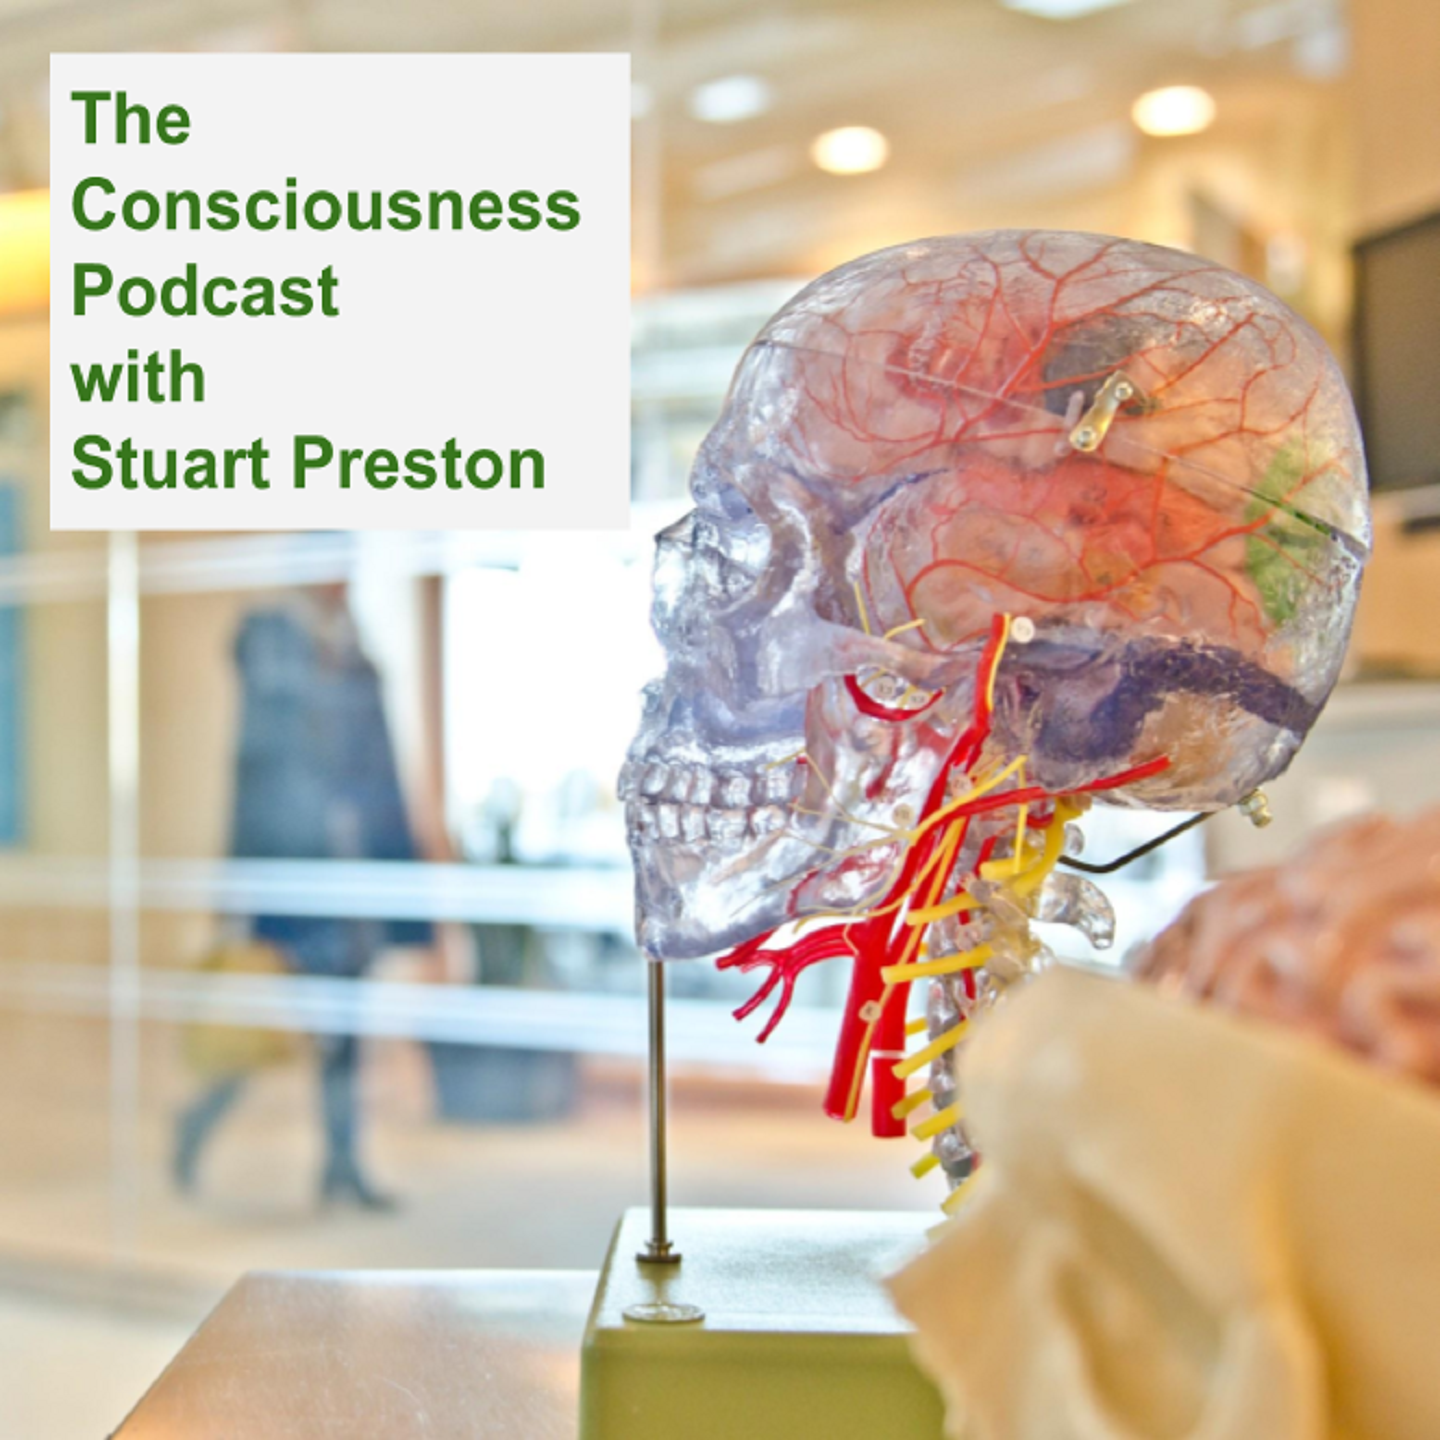 The Consciousness Podcast